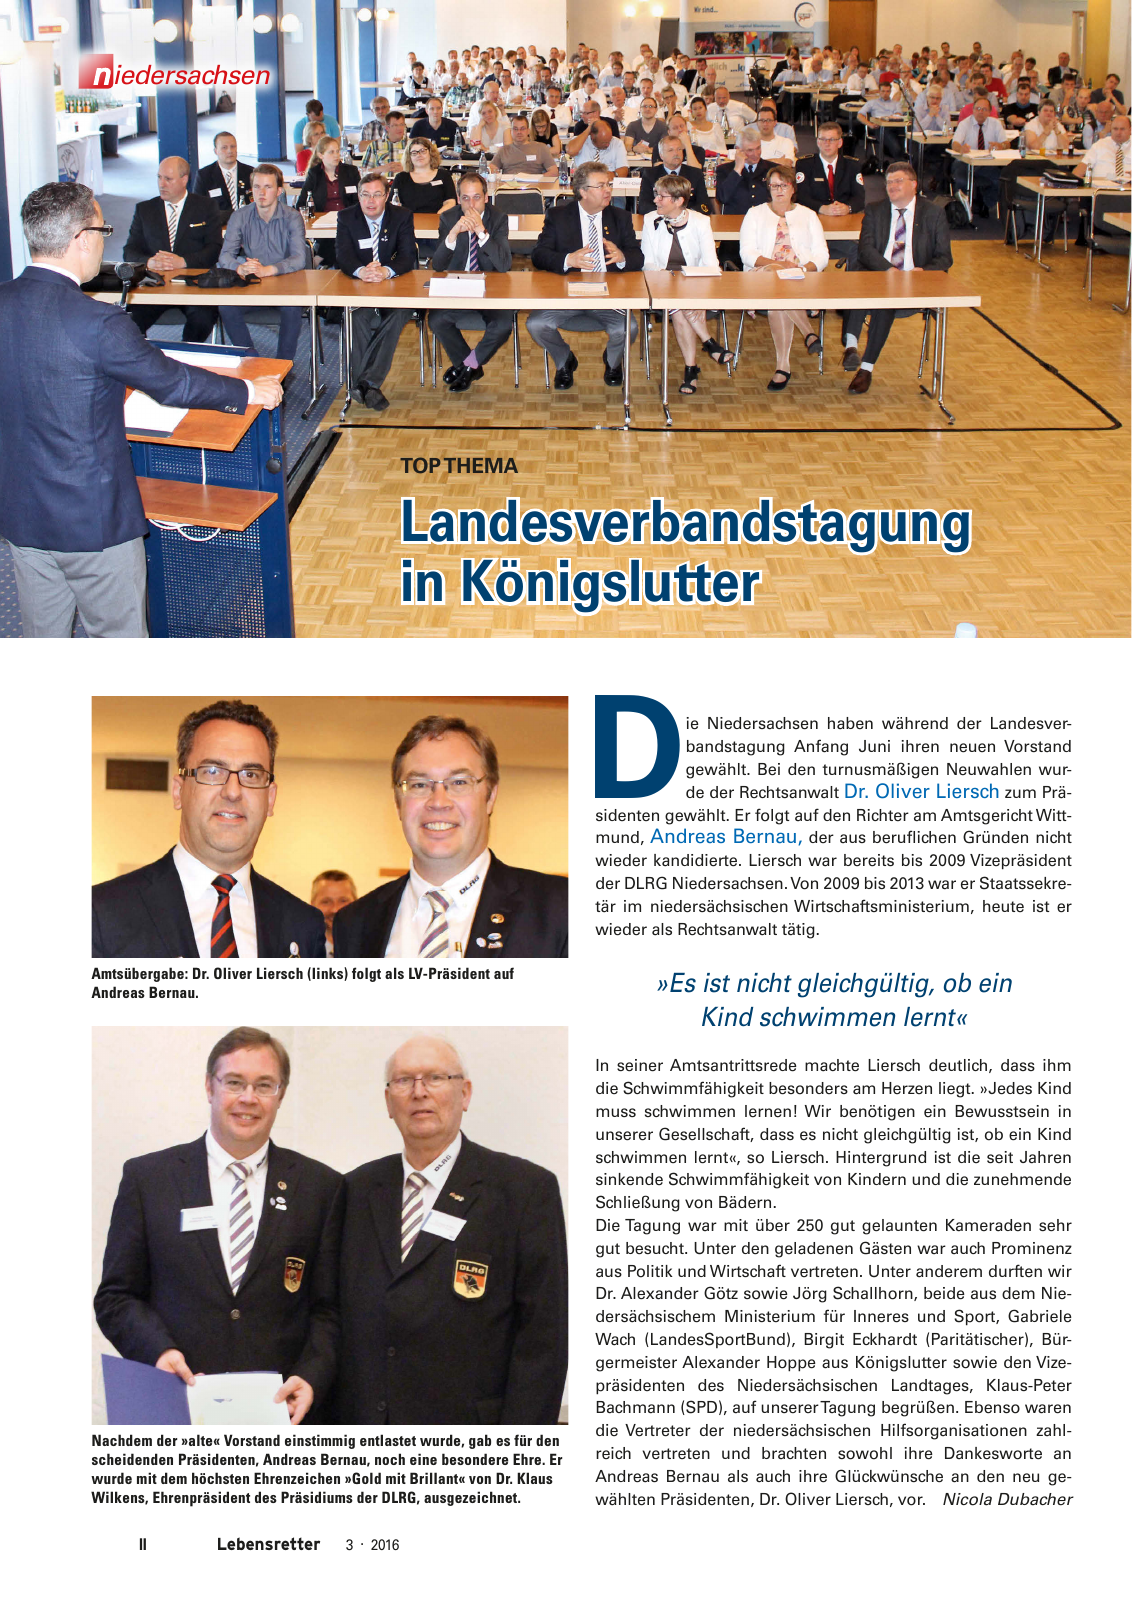 Vorschau Lebensretter 3/2016 - Regionalausgabe Niedersachsen Seite 4